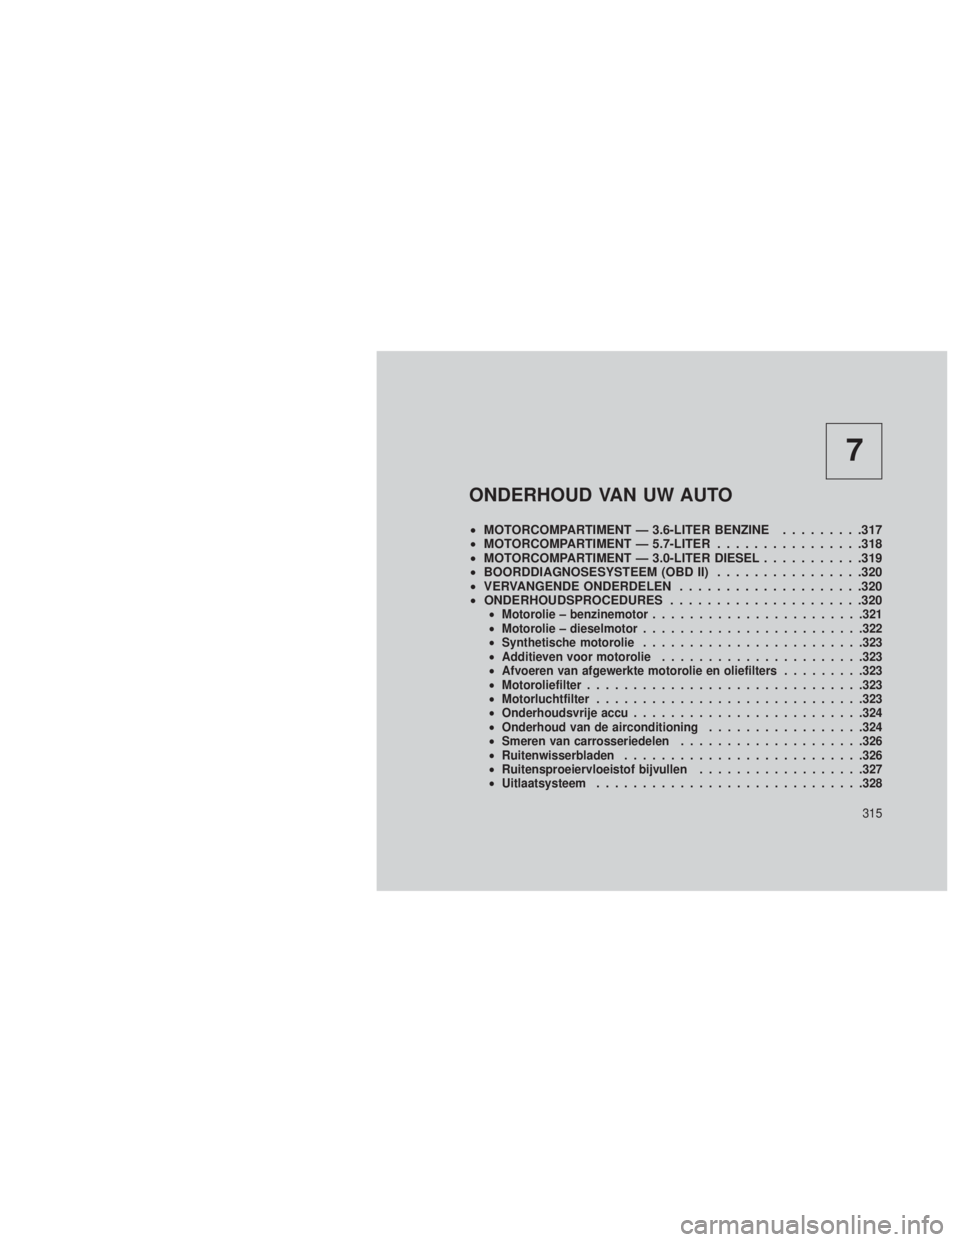 JEEP GRAND CHEROKEE 2013  Instructieboek (in Dutch) 7
ONDERHOUD VAN UW AUTO
•MOTORCOMPARTIMENT — 3.6-LITER BENZINE .........317
• MOTORCOMPARTIMENT — 5.7-LITER ................318
• MOTORCOMPARTIMENT — 3.0-LITER DIESEL ...........319
• BO